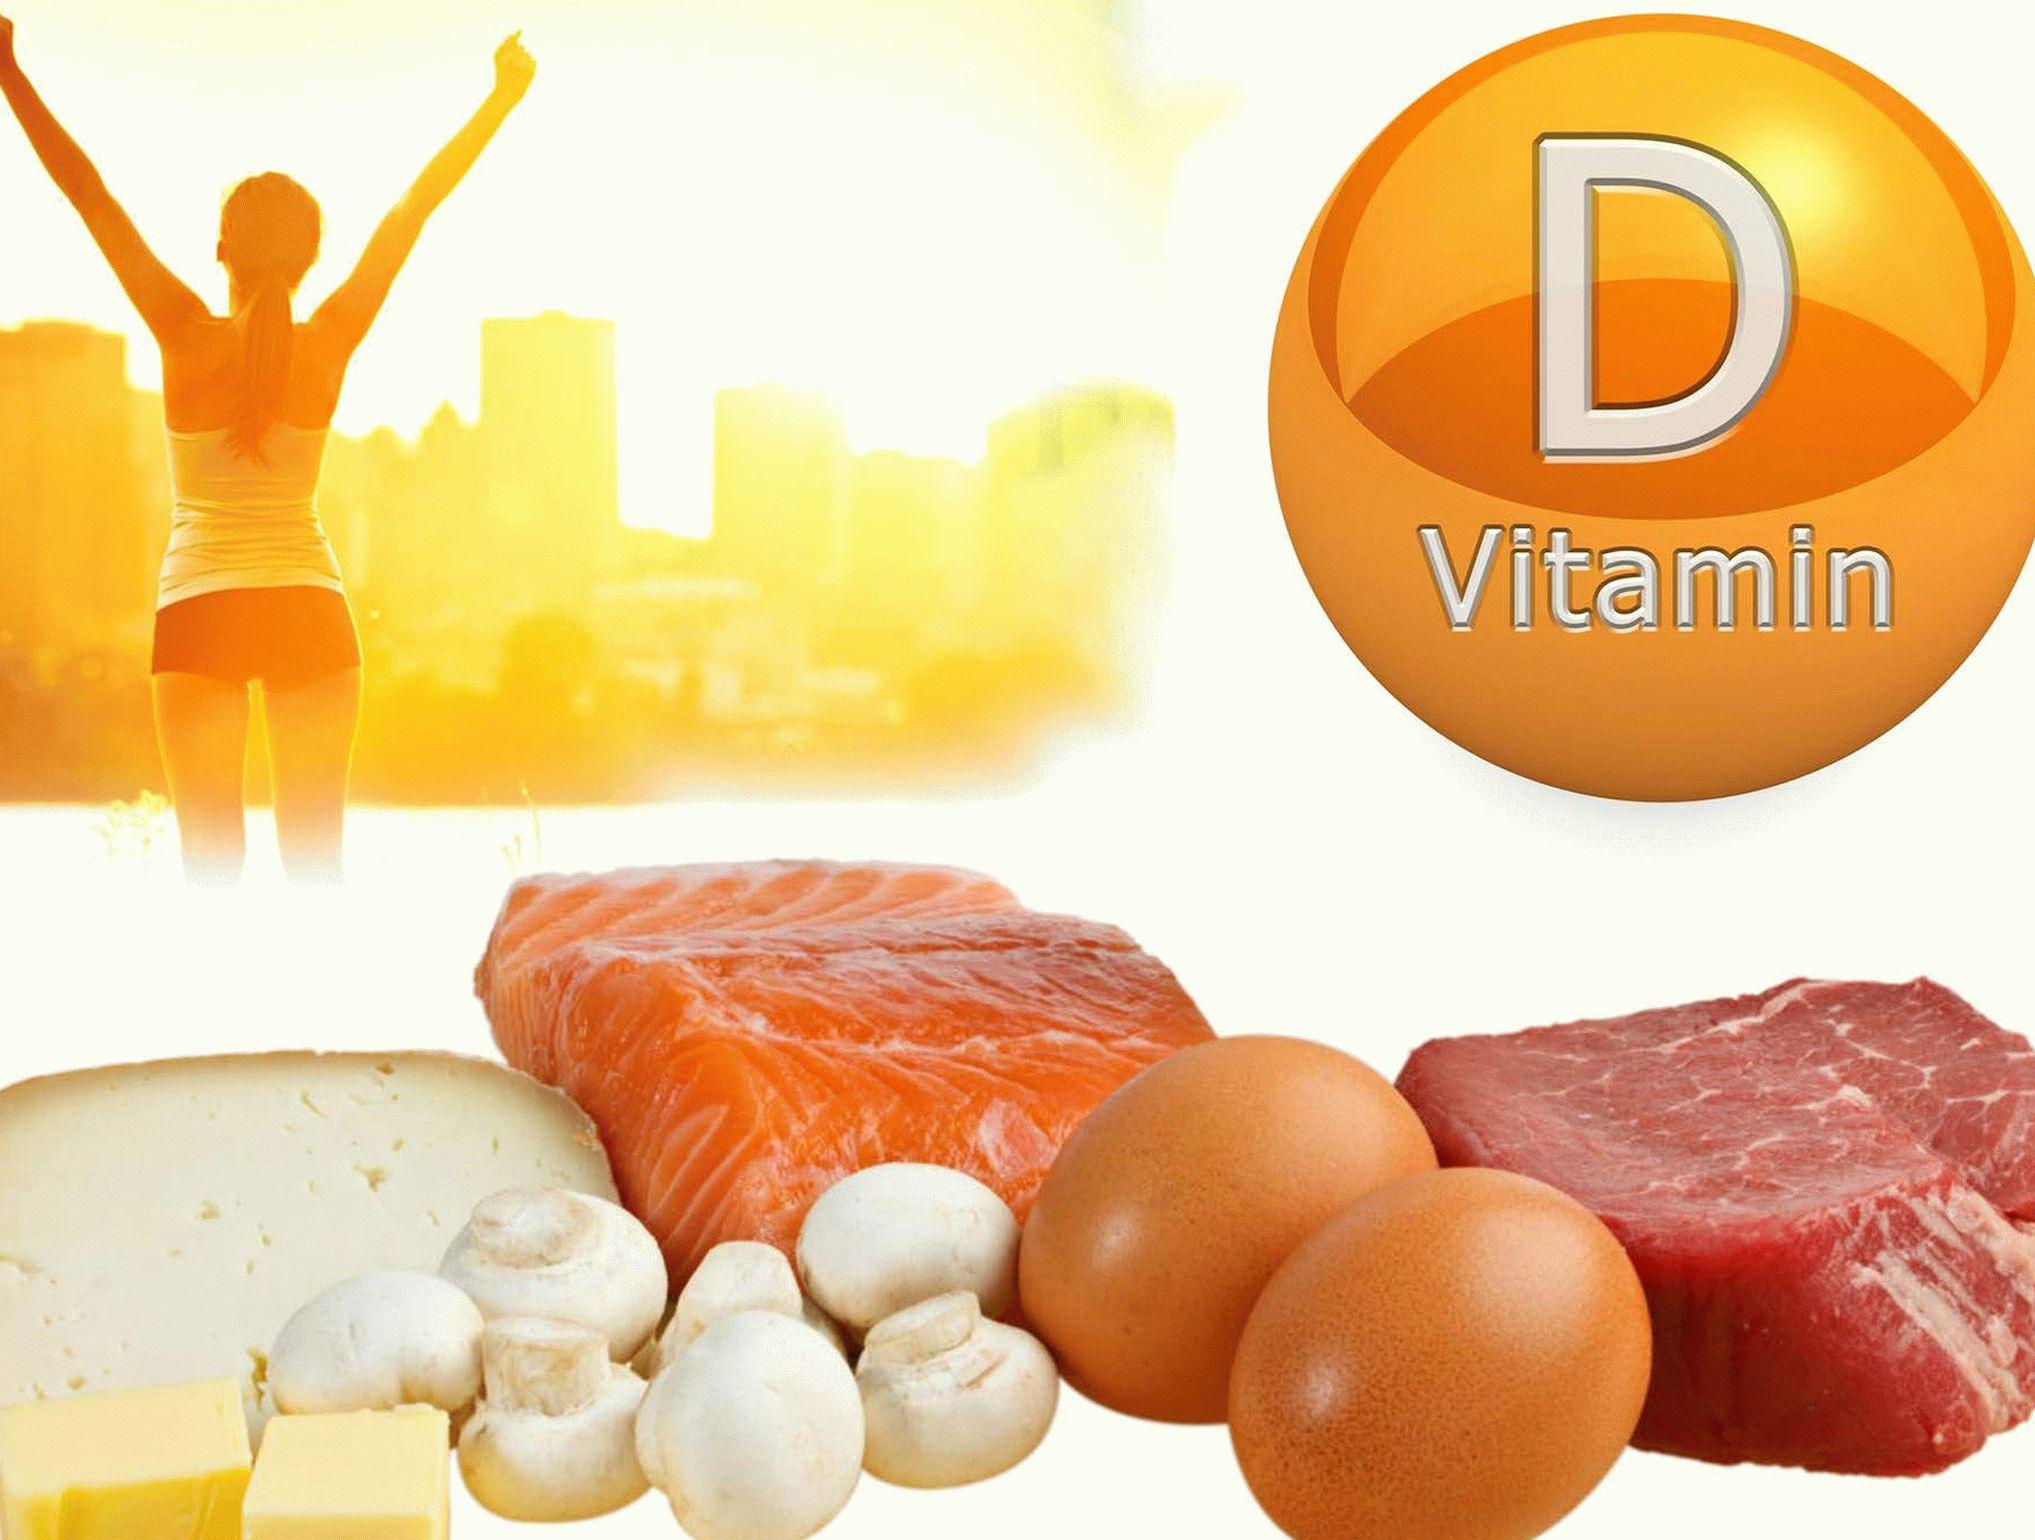 D vitamin витамин д. Витамин д. Источники витамина д. Вит д. Витамин d источники витамина для организма.